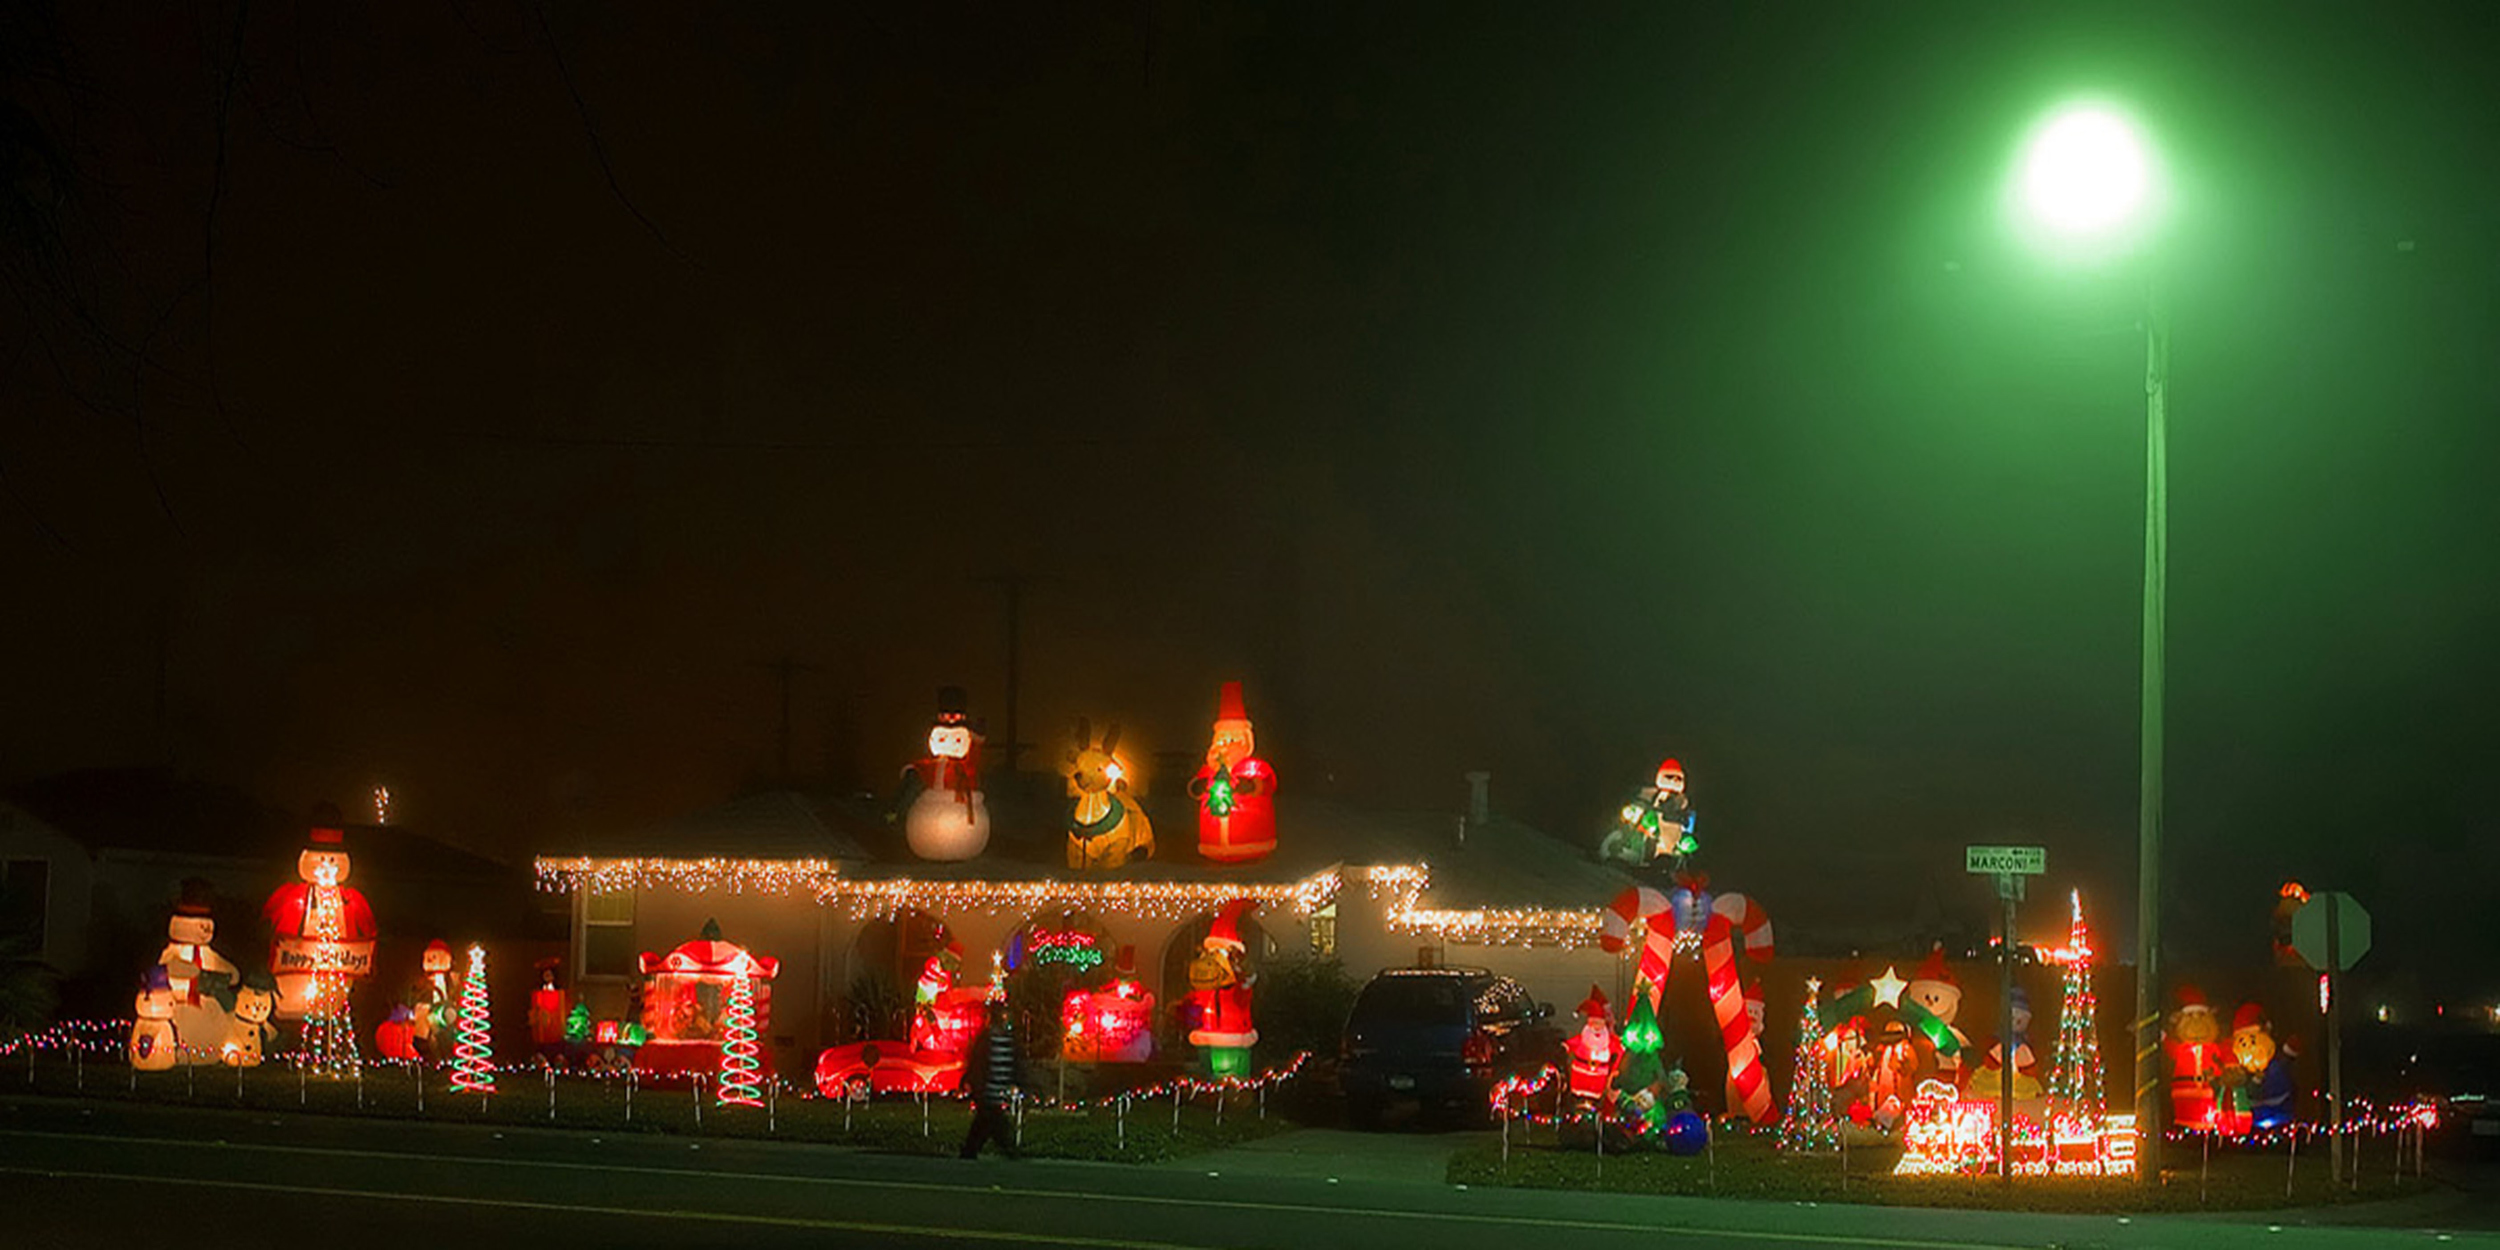   Inflatable Christmas display - Sacramento, CA  